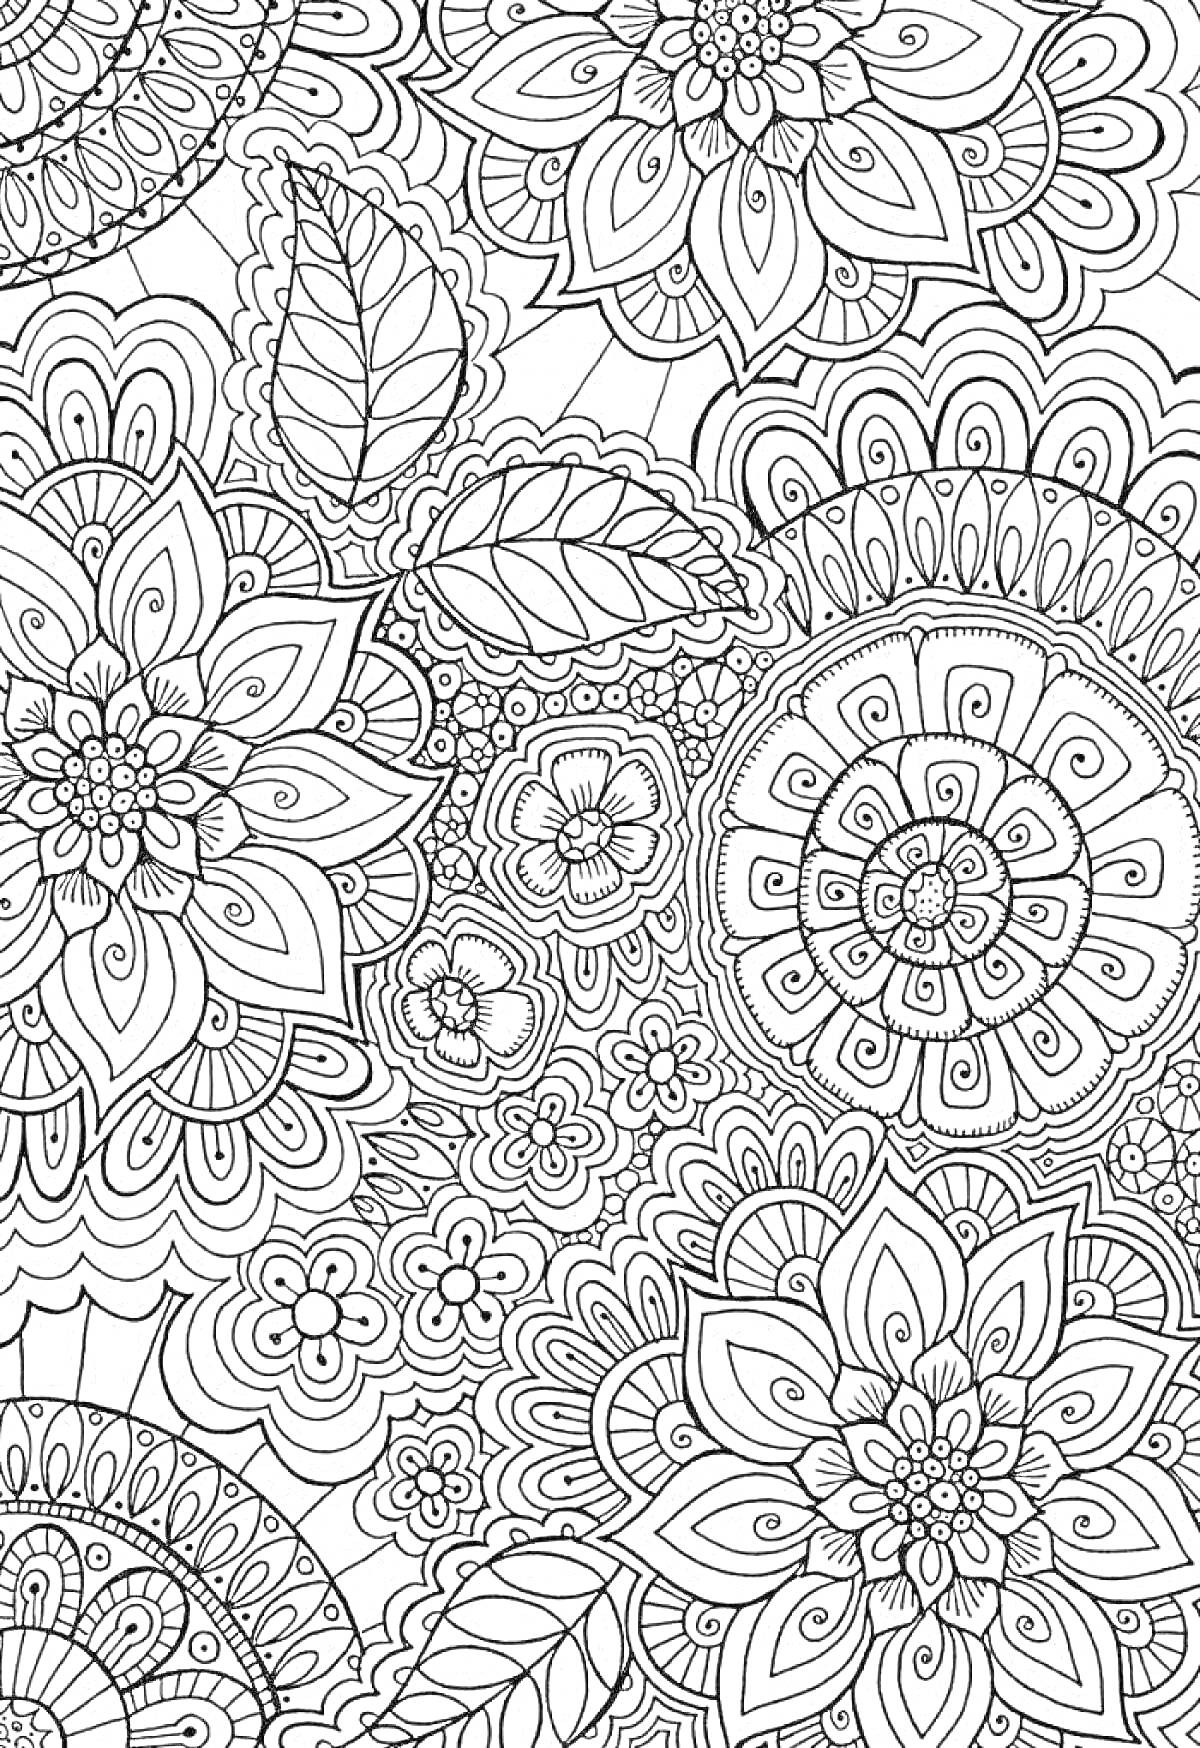 Раскраска Узоры антистресс с цветами, листьями и орнаментами